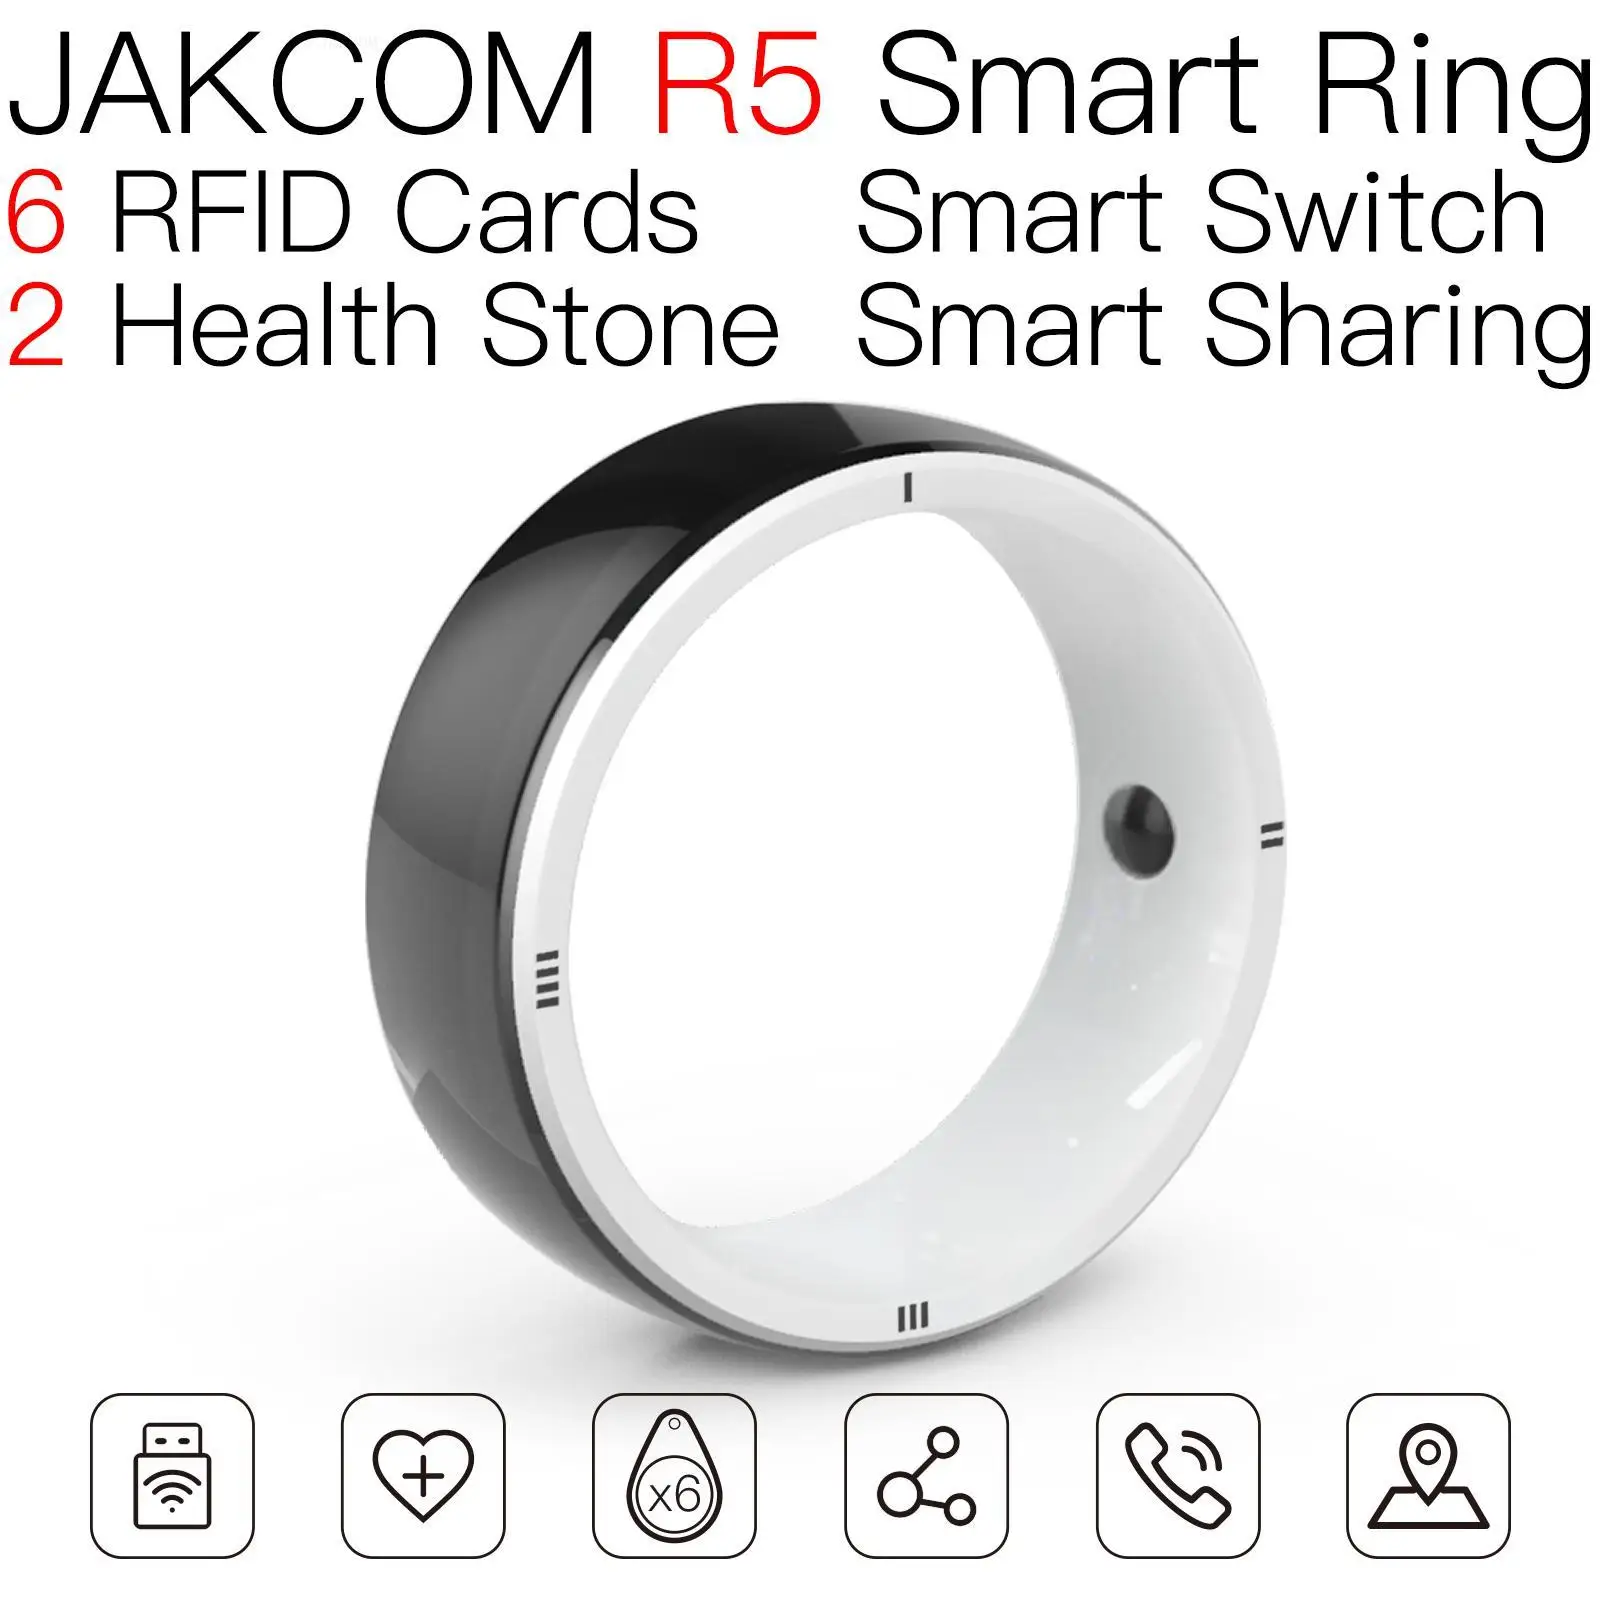 

Умное кольцо JAKCOM R5, новый продукт, как часы s1 home vip magic solar, умные часы era one genshin impact